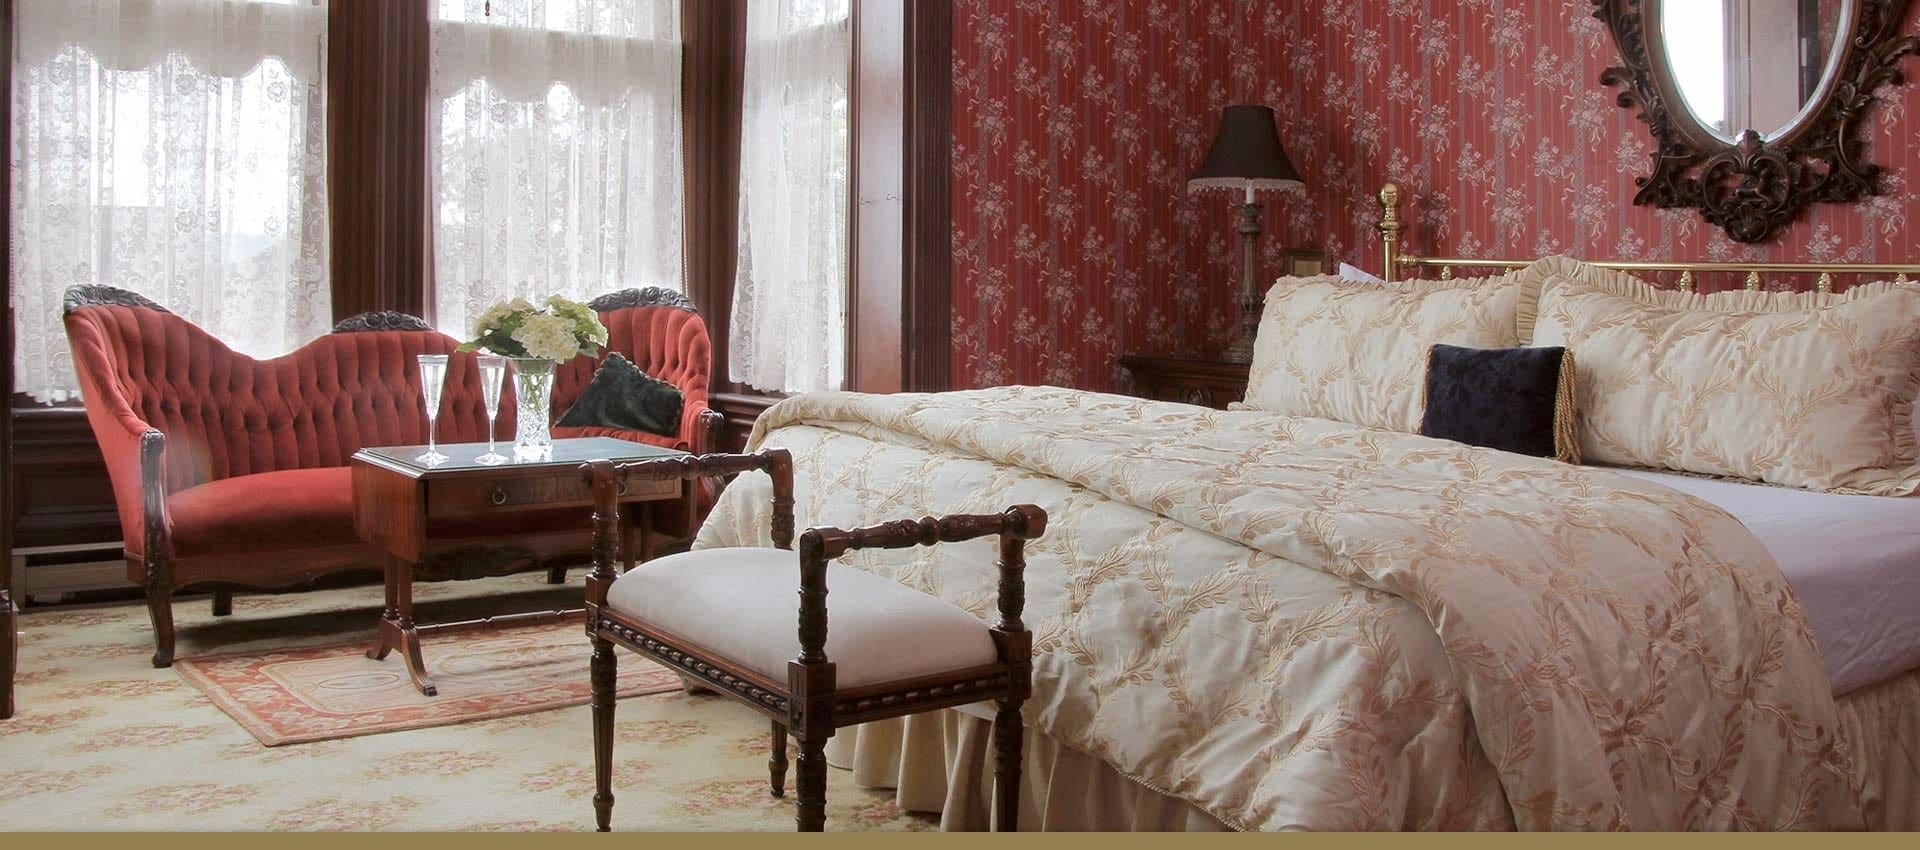 Victorian Hotel Victorian Parlor bedroom